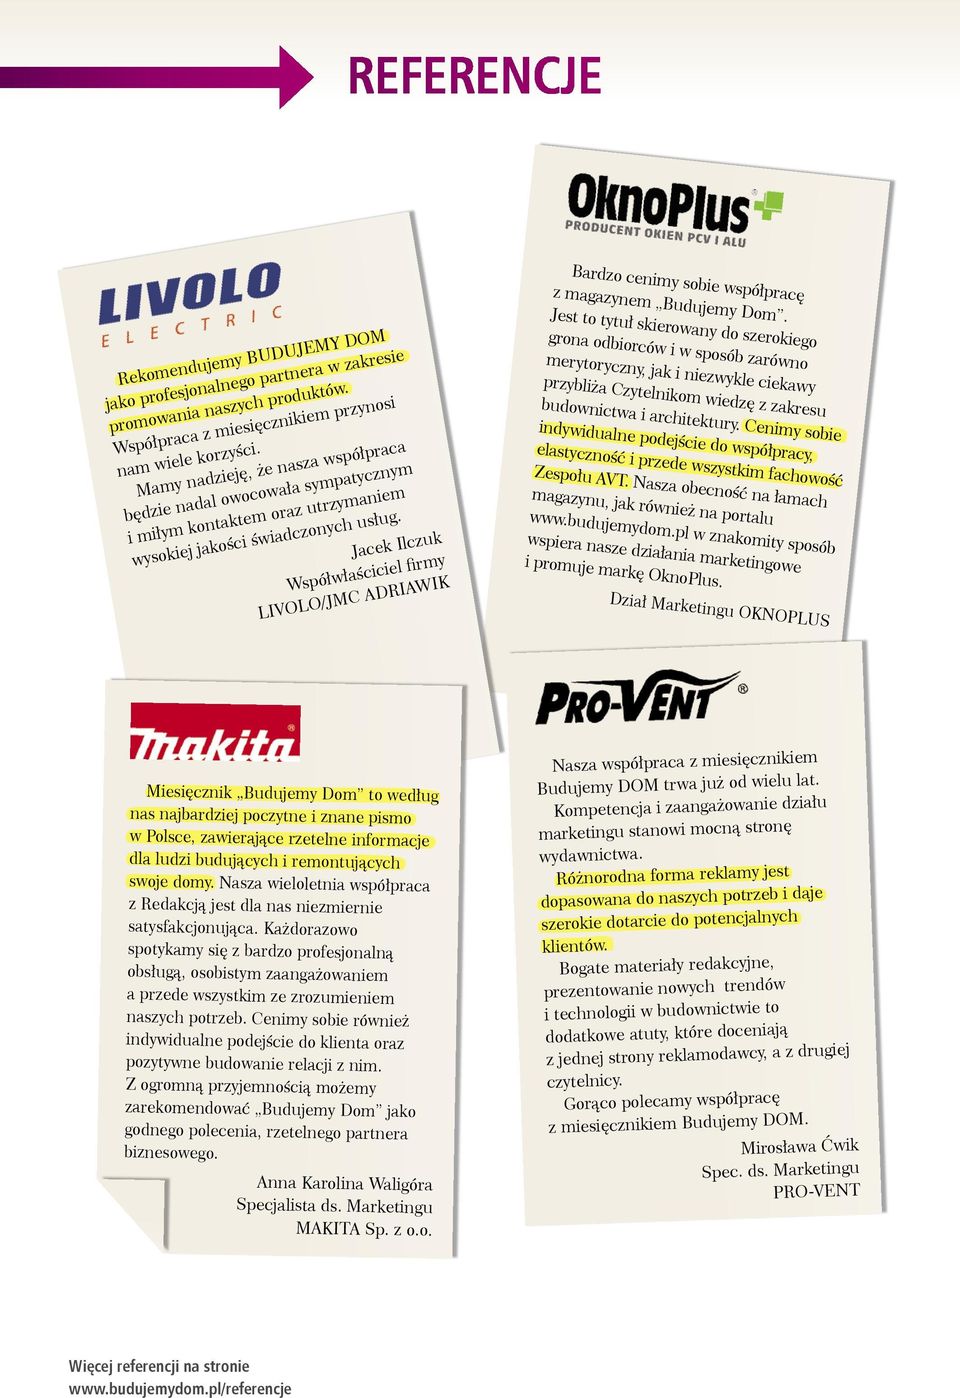 Jacek Ilczuk Współwłaściciel firmy LIVOLO/JMC ADRIAWIK Bardzo cenimy sobie współpracę z magazynem.